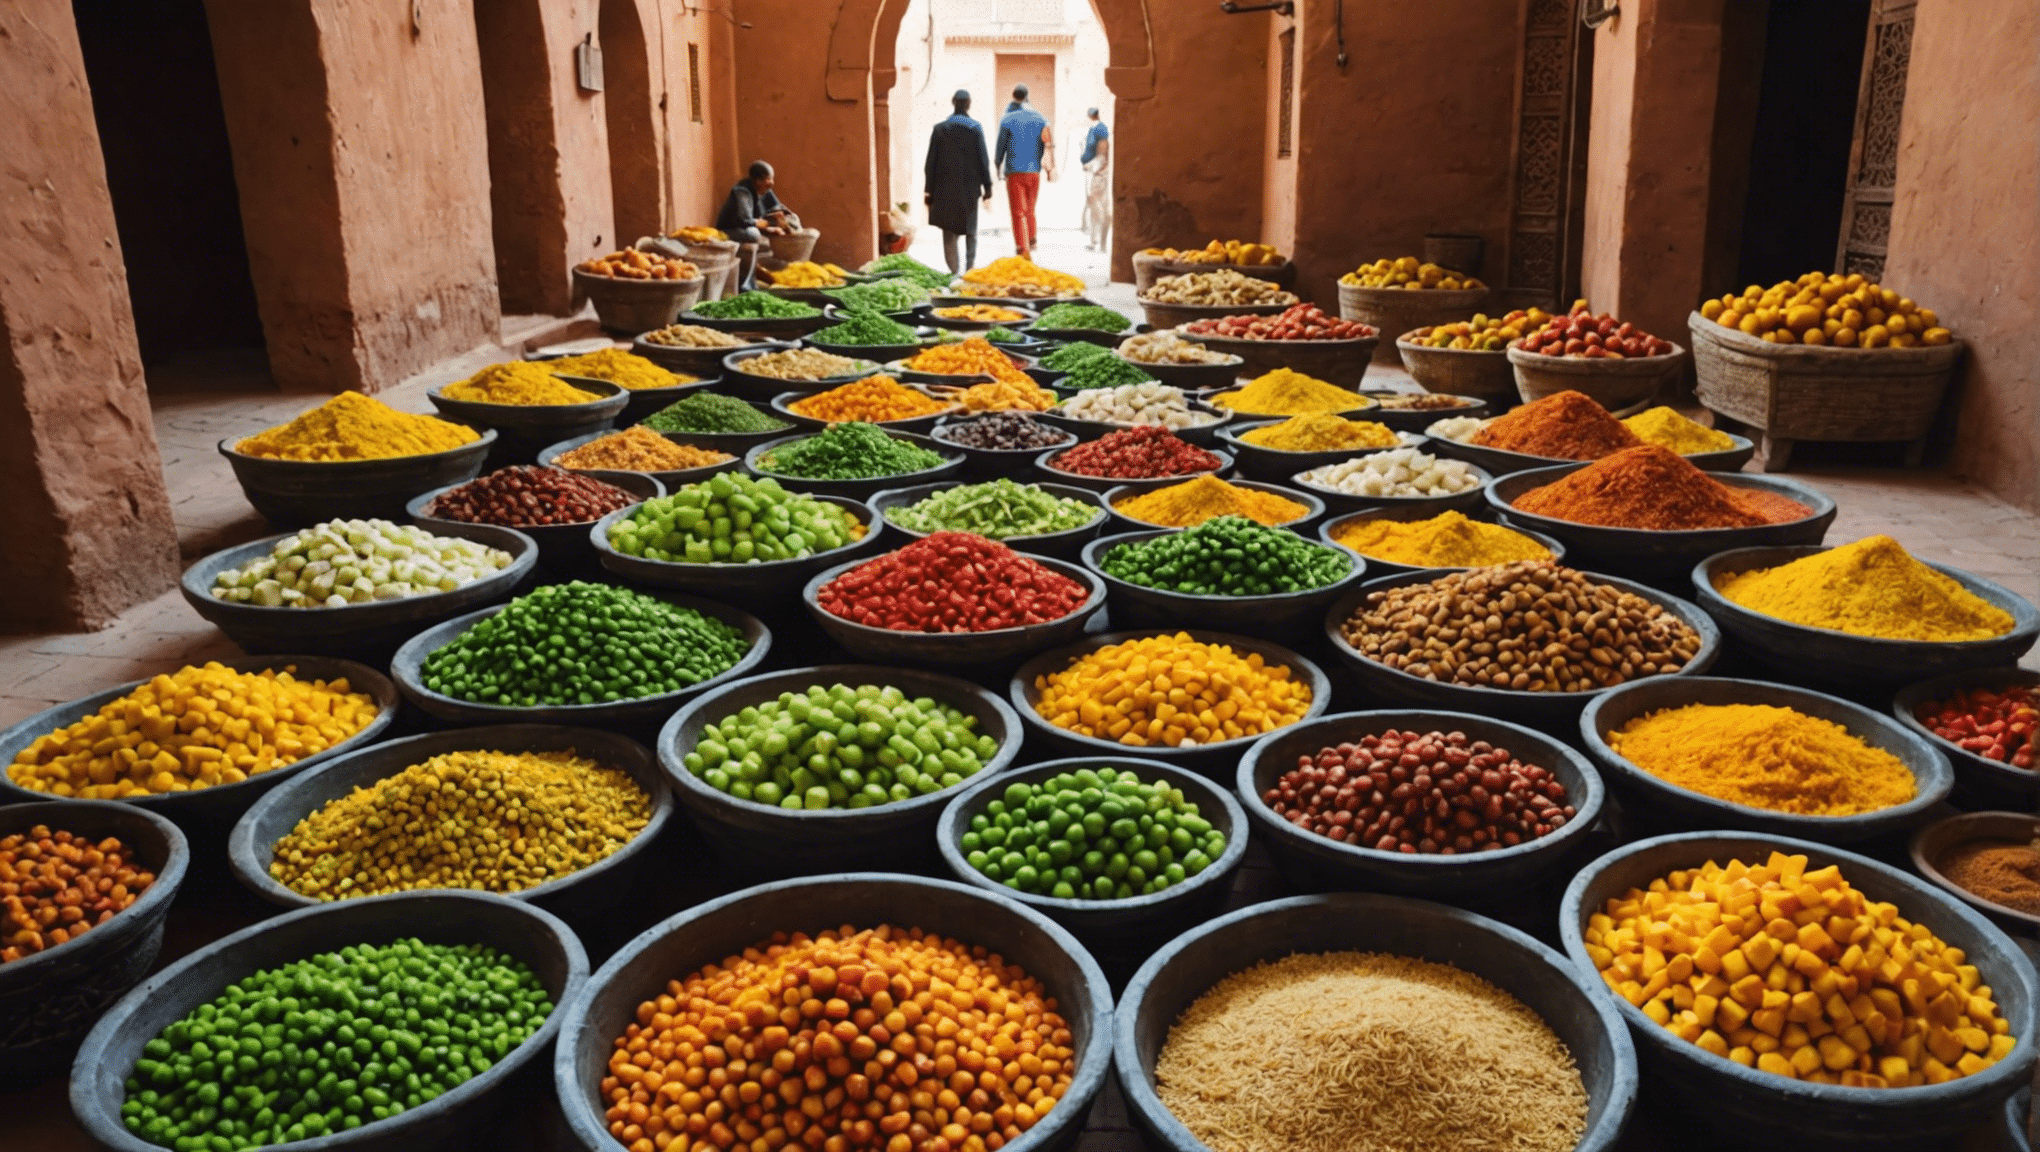 découvrez la disponibilité de la nourriture végétarienne à Marrakech et découvrez où déguster de délicieux repas sans viande lors de votre visite dans cette ville animée.